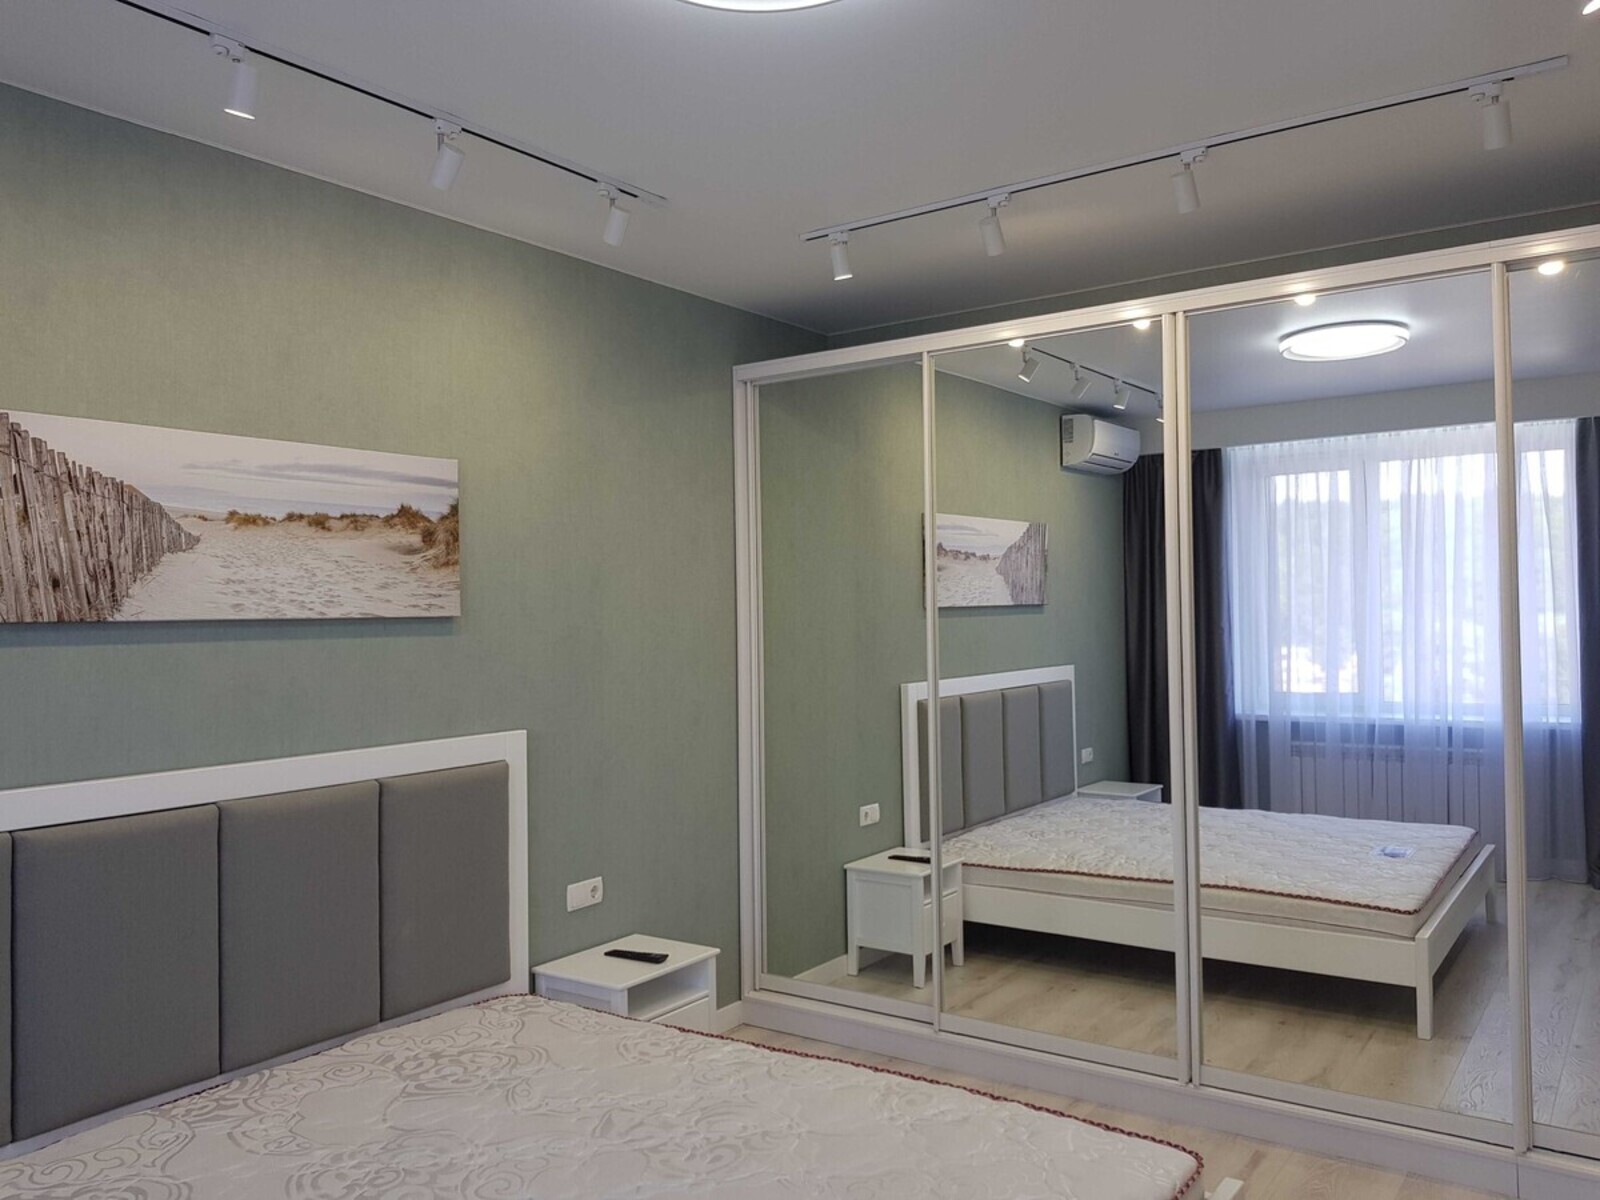 Продается Однокімнатна квартира в новобудові з дизайнерським ремонтом код №212780024